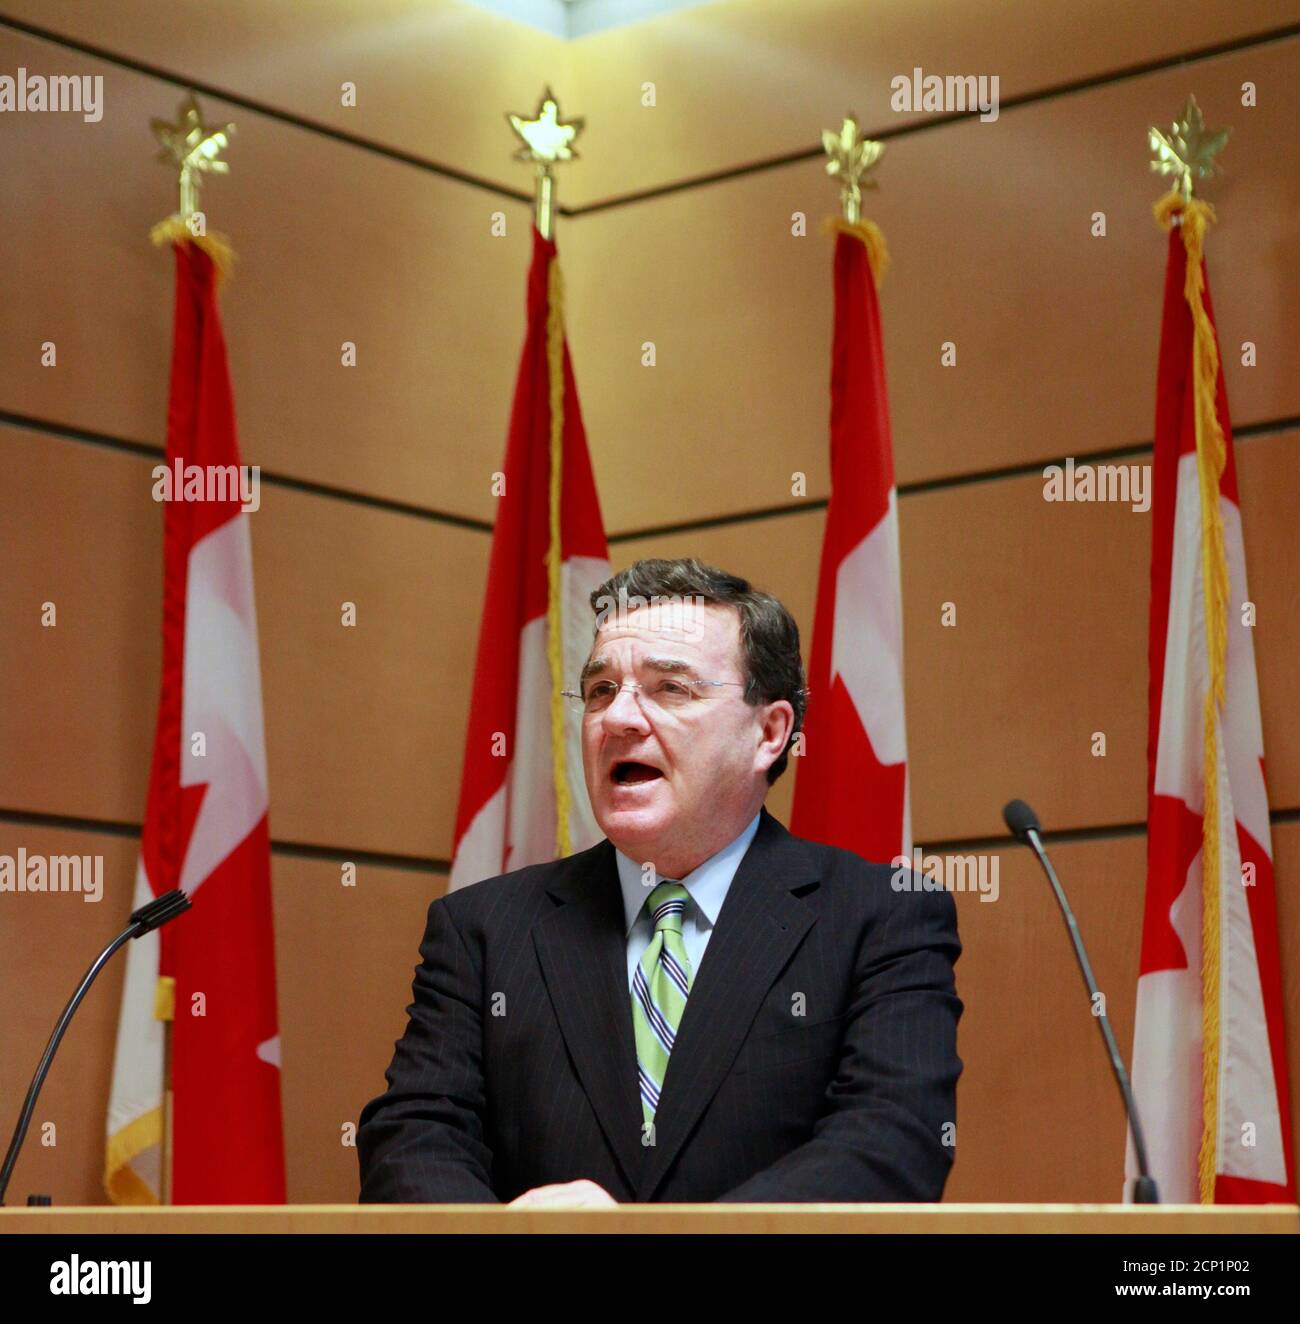 Kanadische Minister der Finanzen Jim Flaherty spricht bei der kanadischen Konsul in New York, vor dieser Woche G8 und G20-Gipfeln, 21. Juni 2010. REUTERS/Brendan McDermid (Vereinigte Staaten - Tags: BUSINESS-Politik) Stockfoto